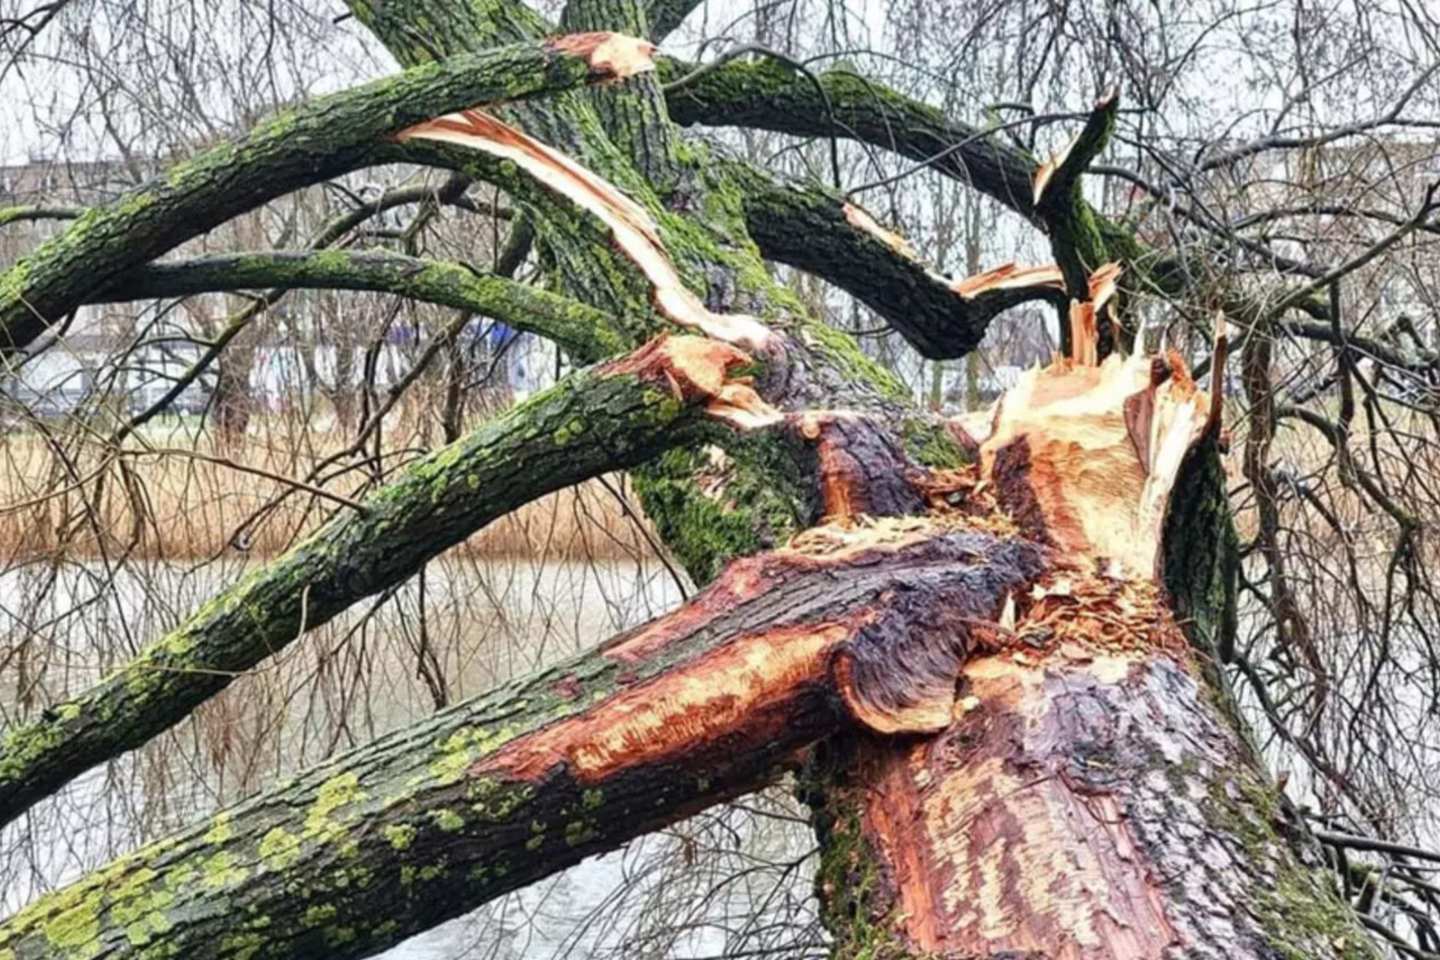 Nuo rudens jau nukirsti 7 bebrų sužaloti medžiai ir dar 10 tokių medžių bus pašalinta artimiausiu metu.<br>Skaitytojos/ve.lt nuotr.